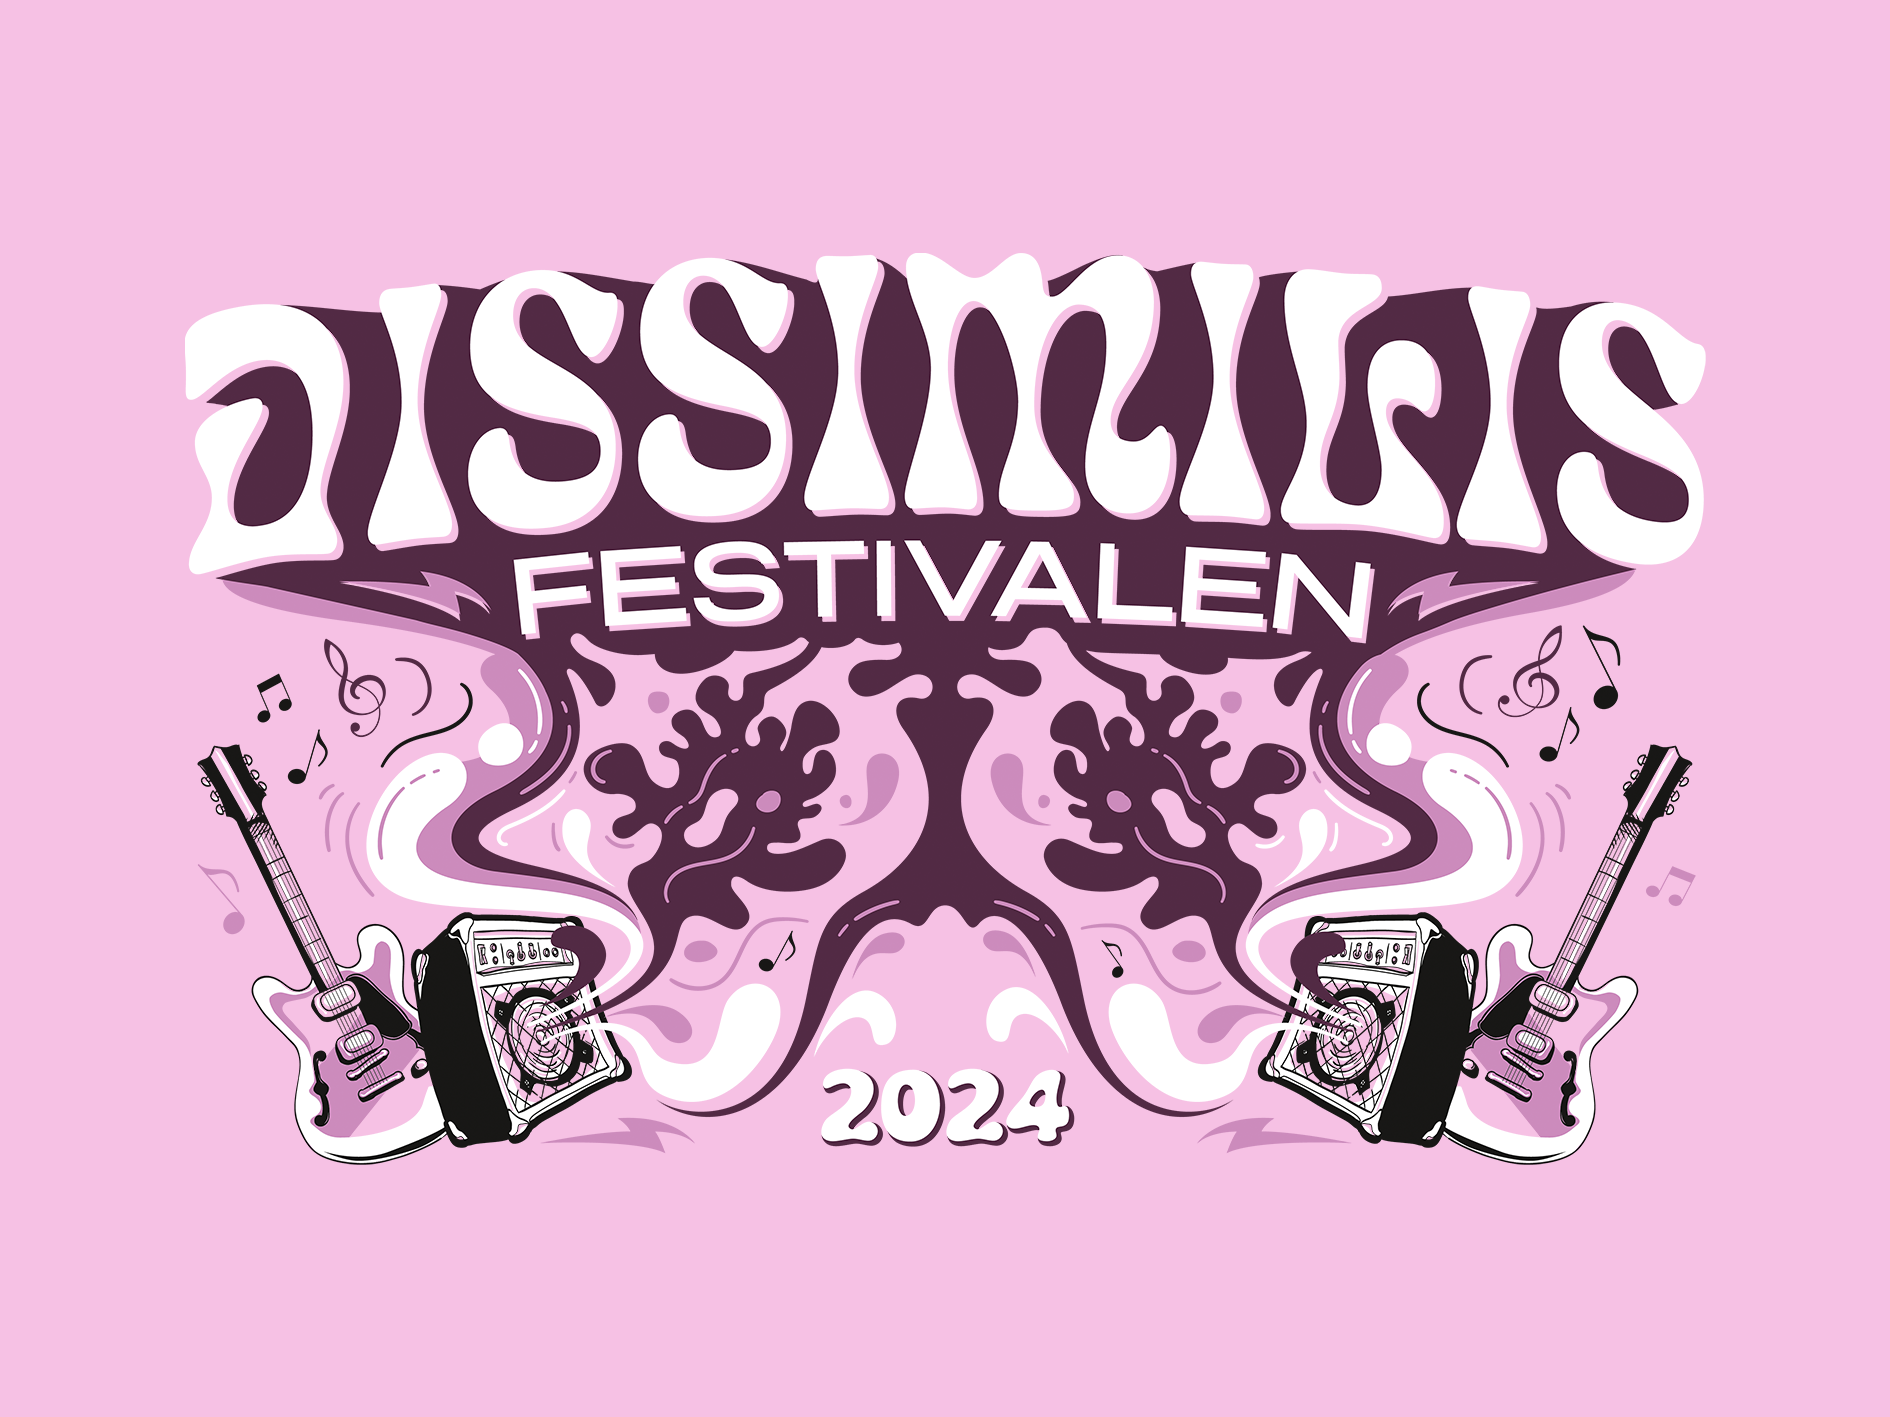 Plakat for dissimilis festivalen